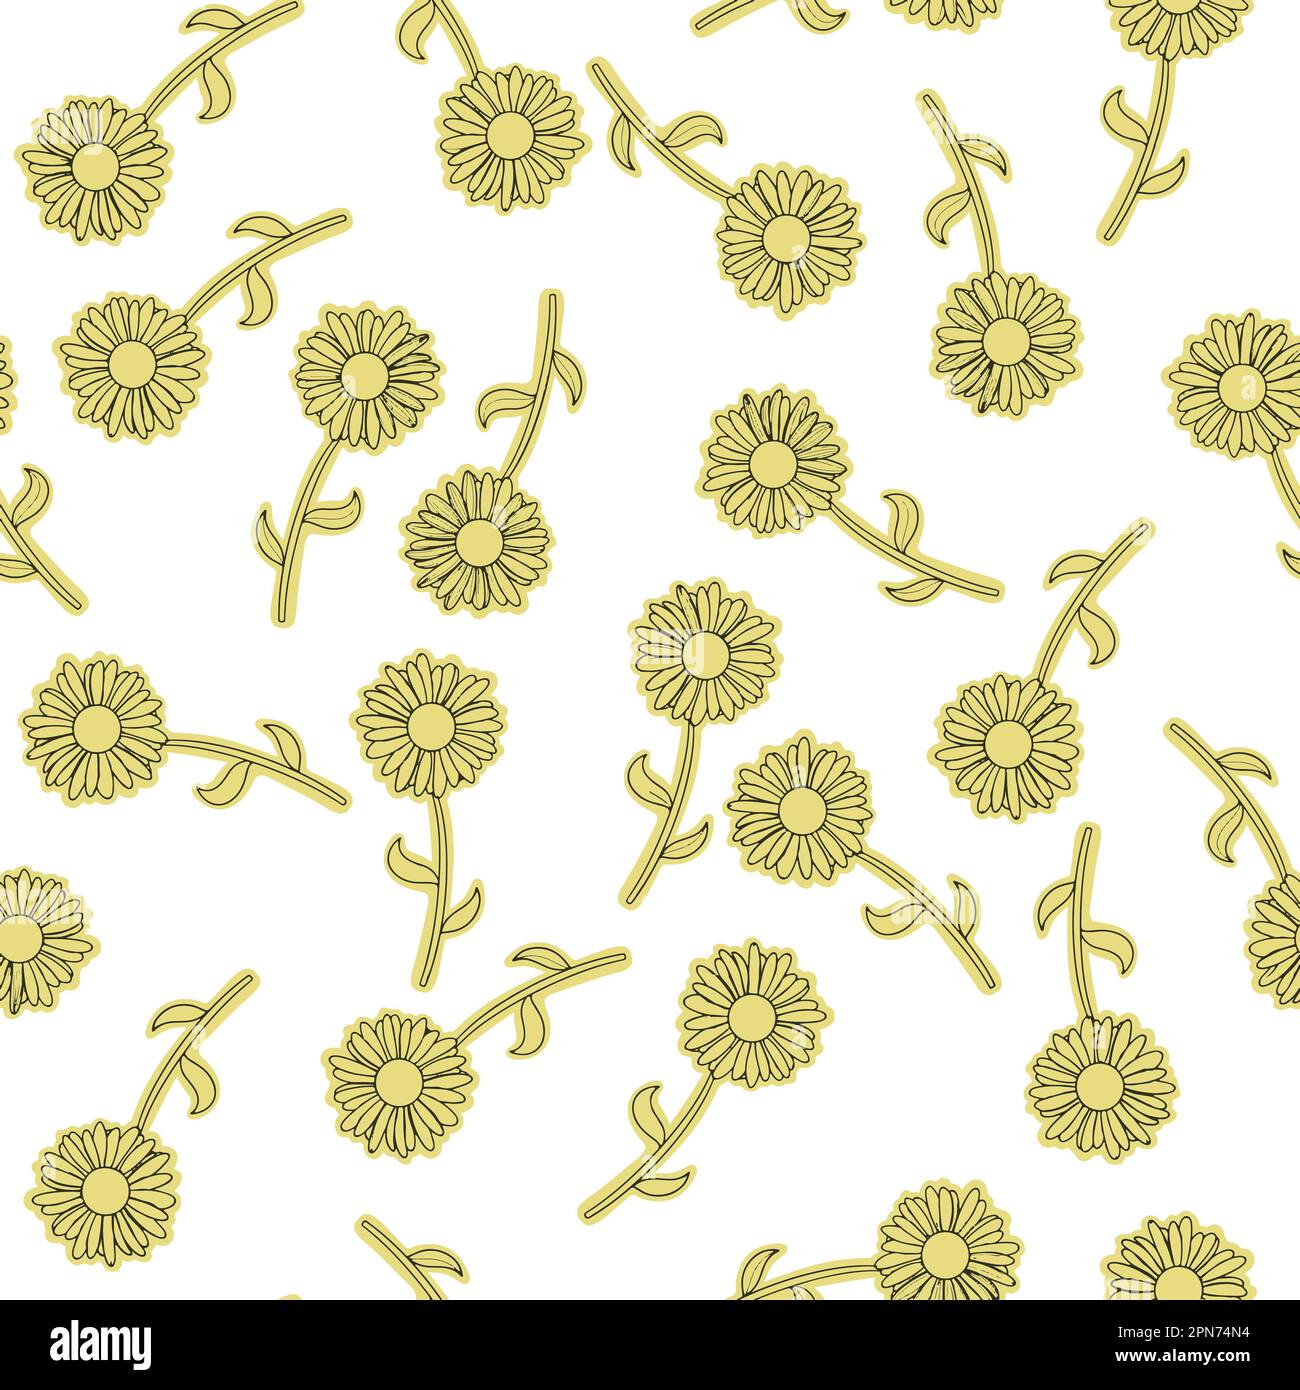 Motif de fleurs jaune. Il s'agit d'une illustration polyvalente conçue pour plusieurs cas d'utilisation. Utilisable pour les produits textiles ou de papeterie. Illustration de Vecteur